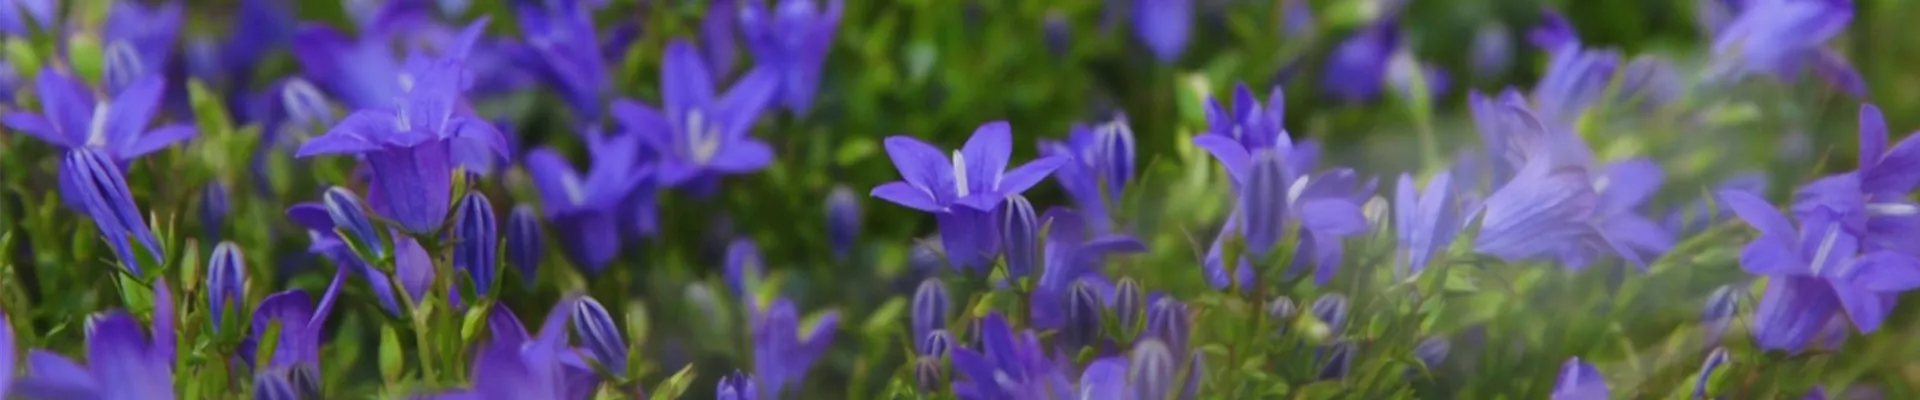 Glockenblume - Einpflanzen in den Garten (thumbnail).jpg